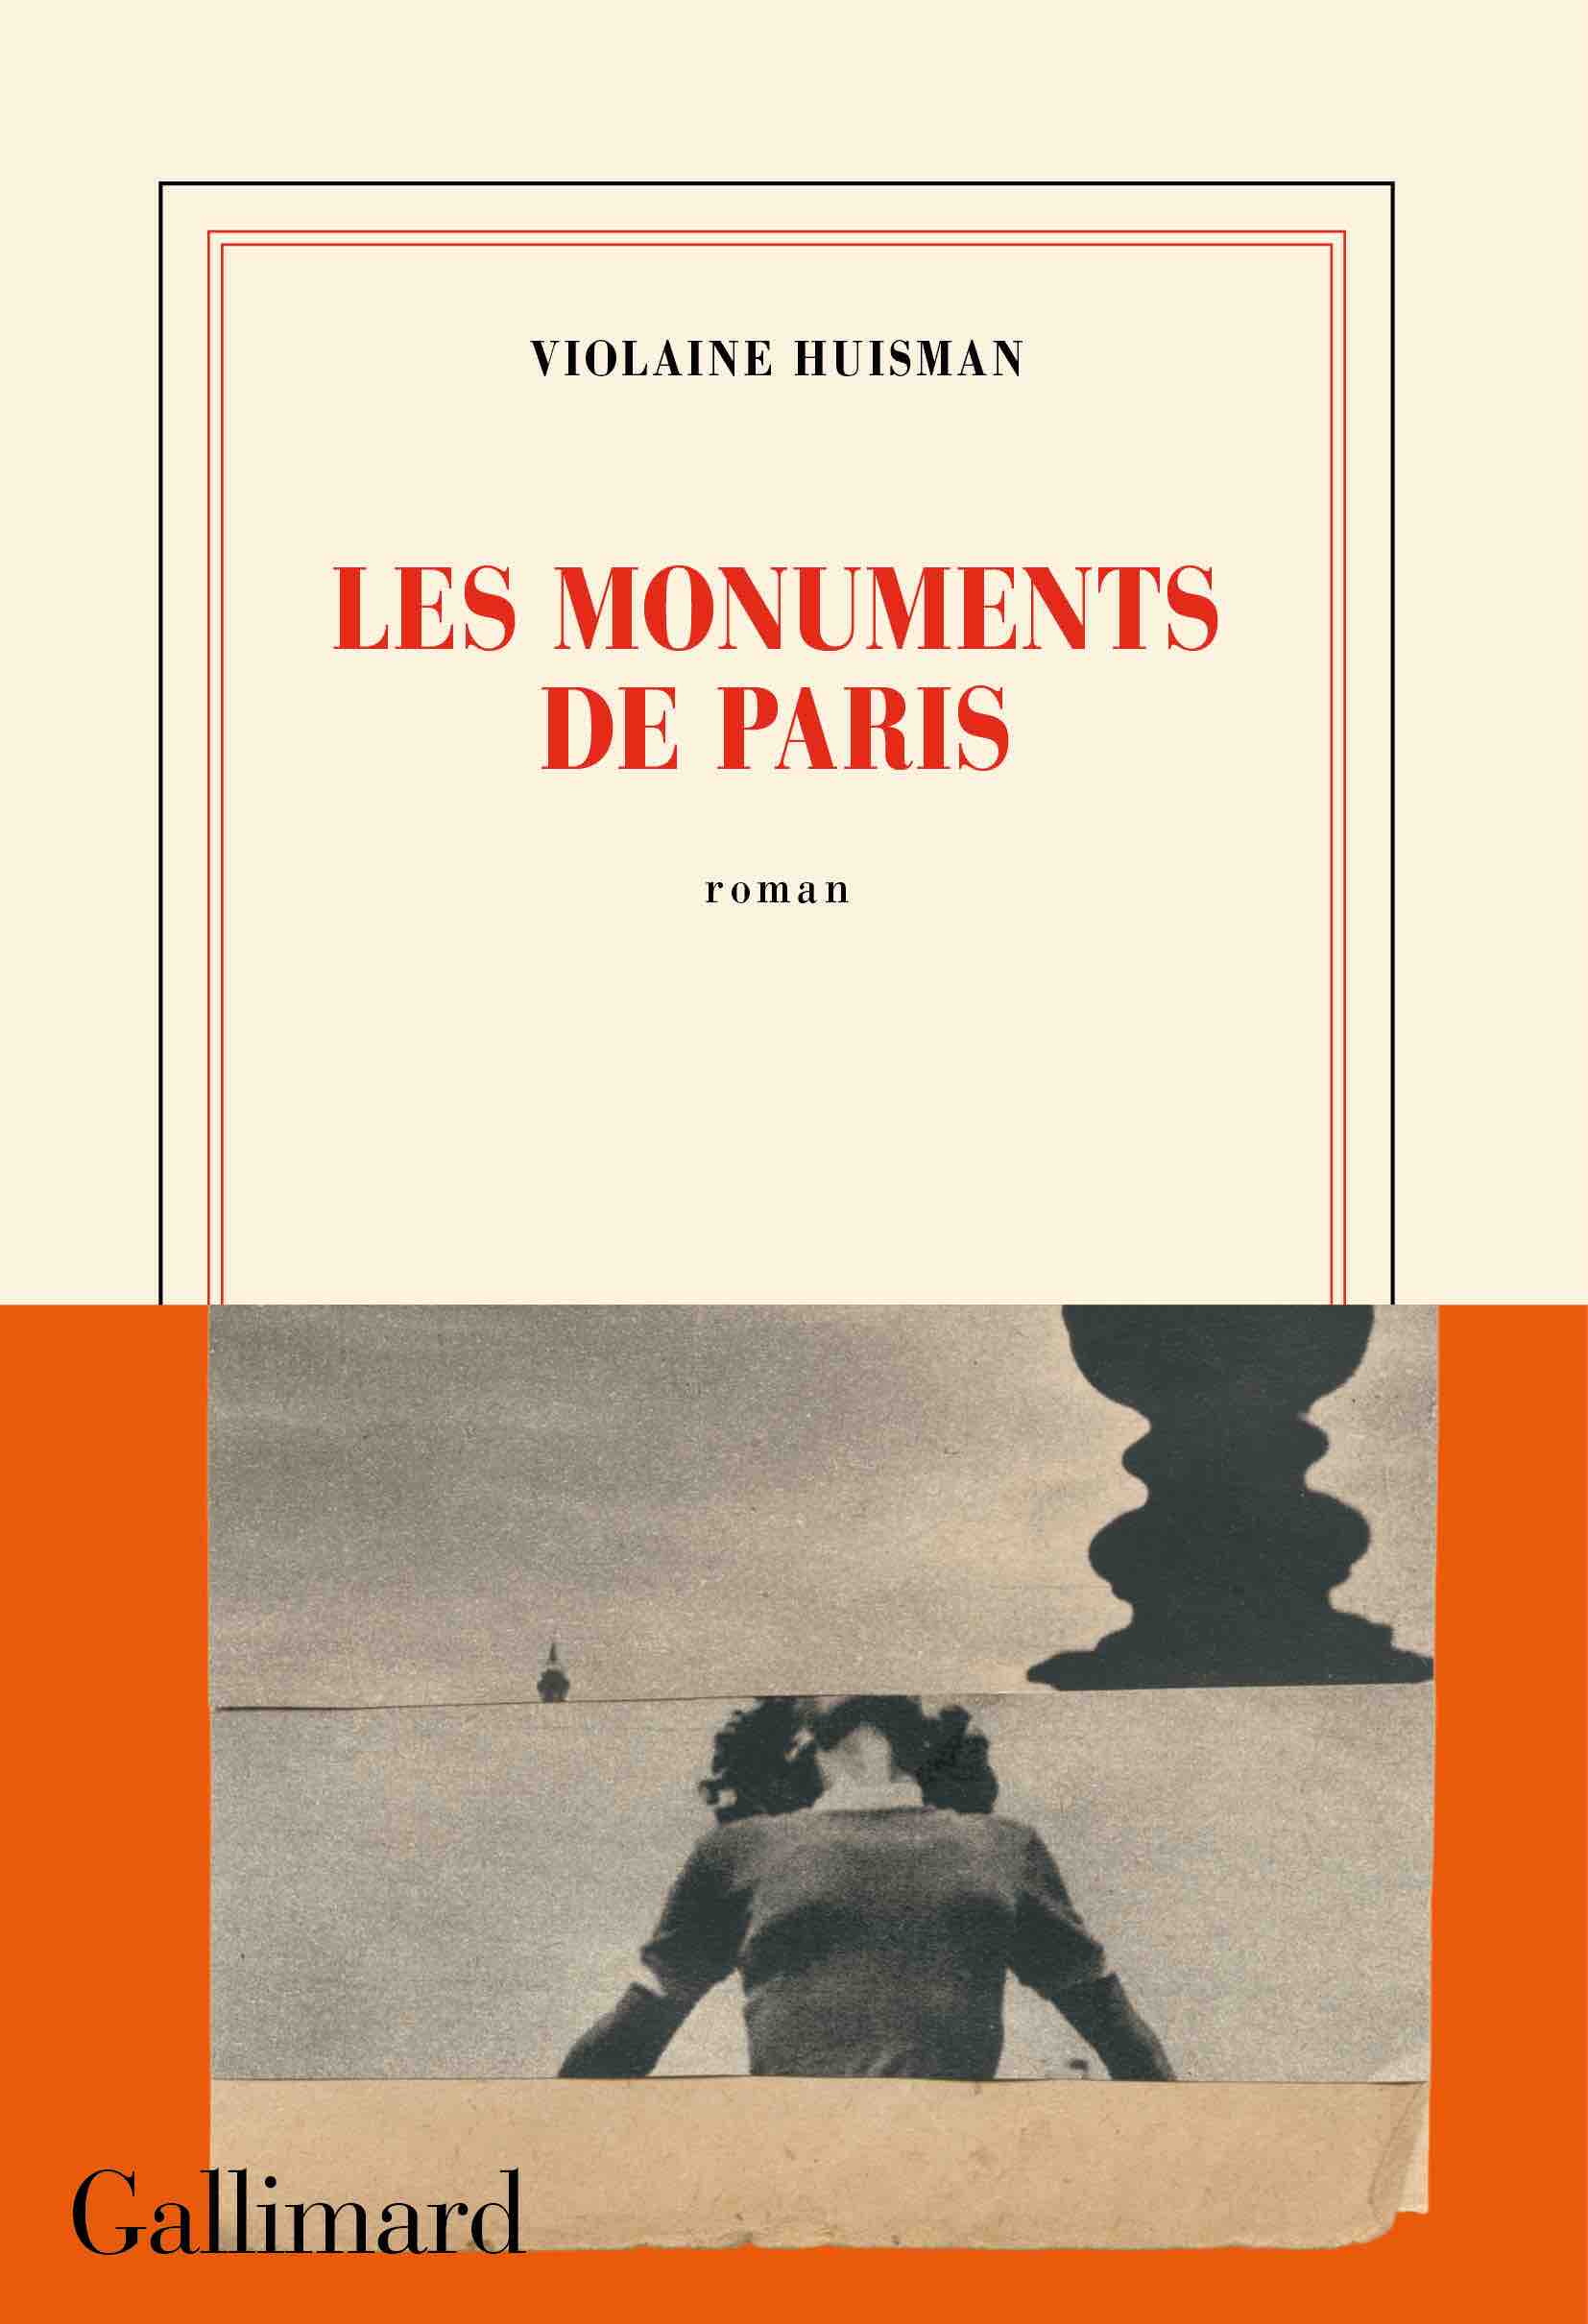 Un sans-abri de Paris rédige un best-seller poignant